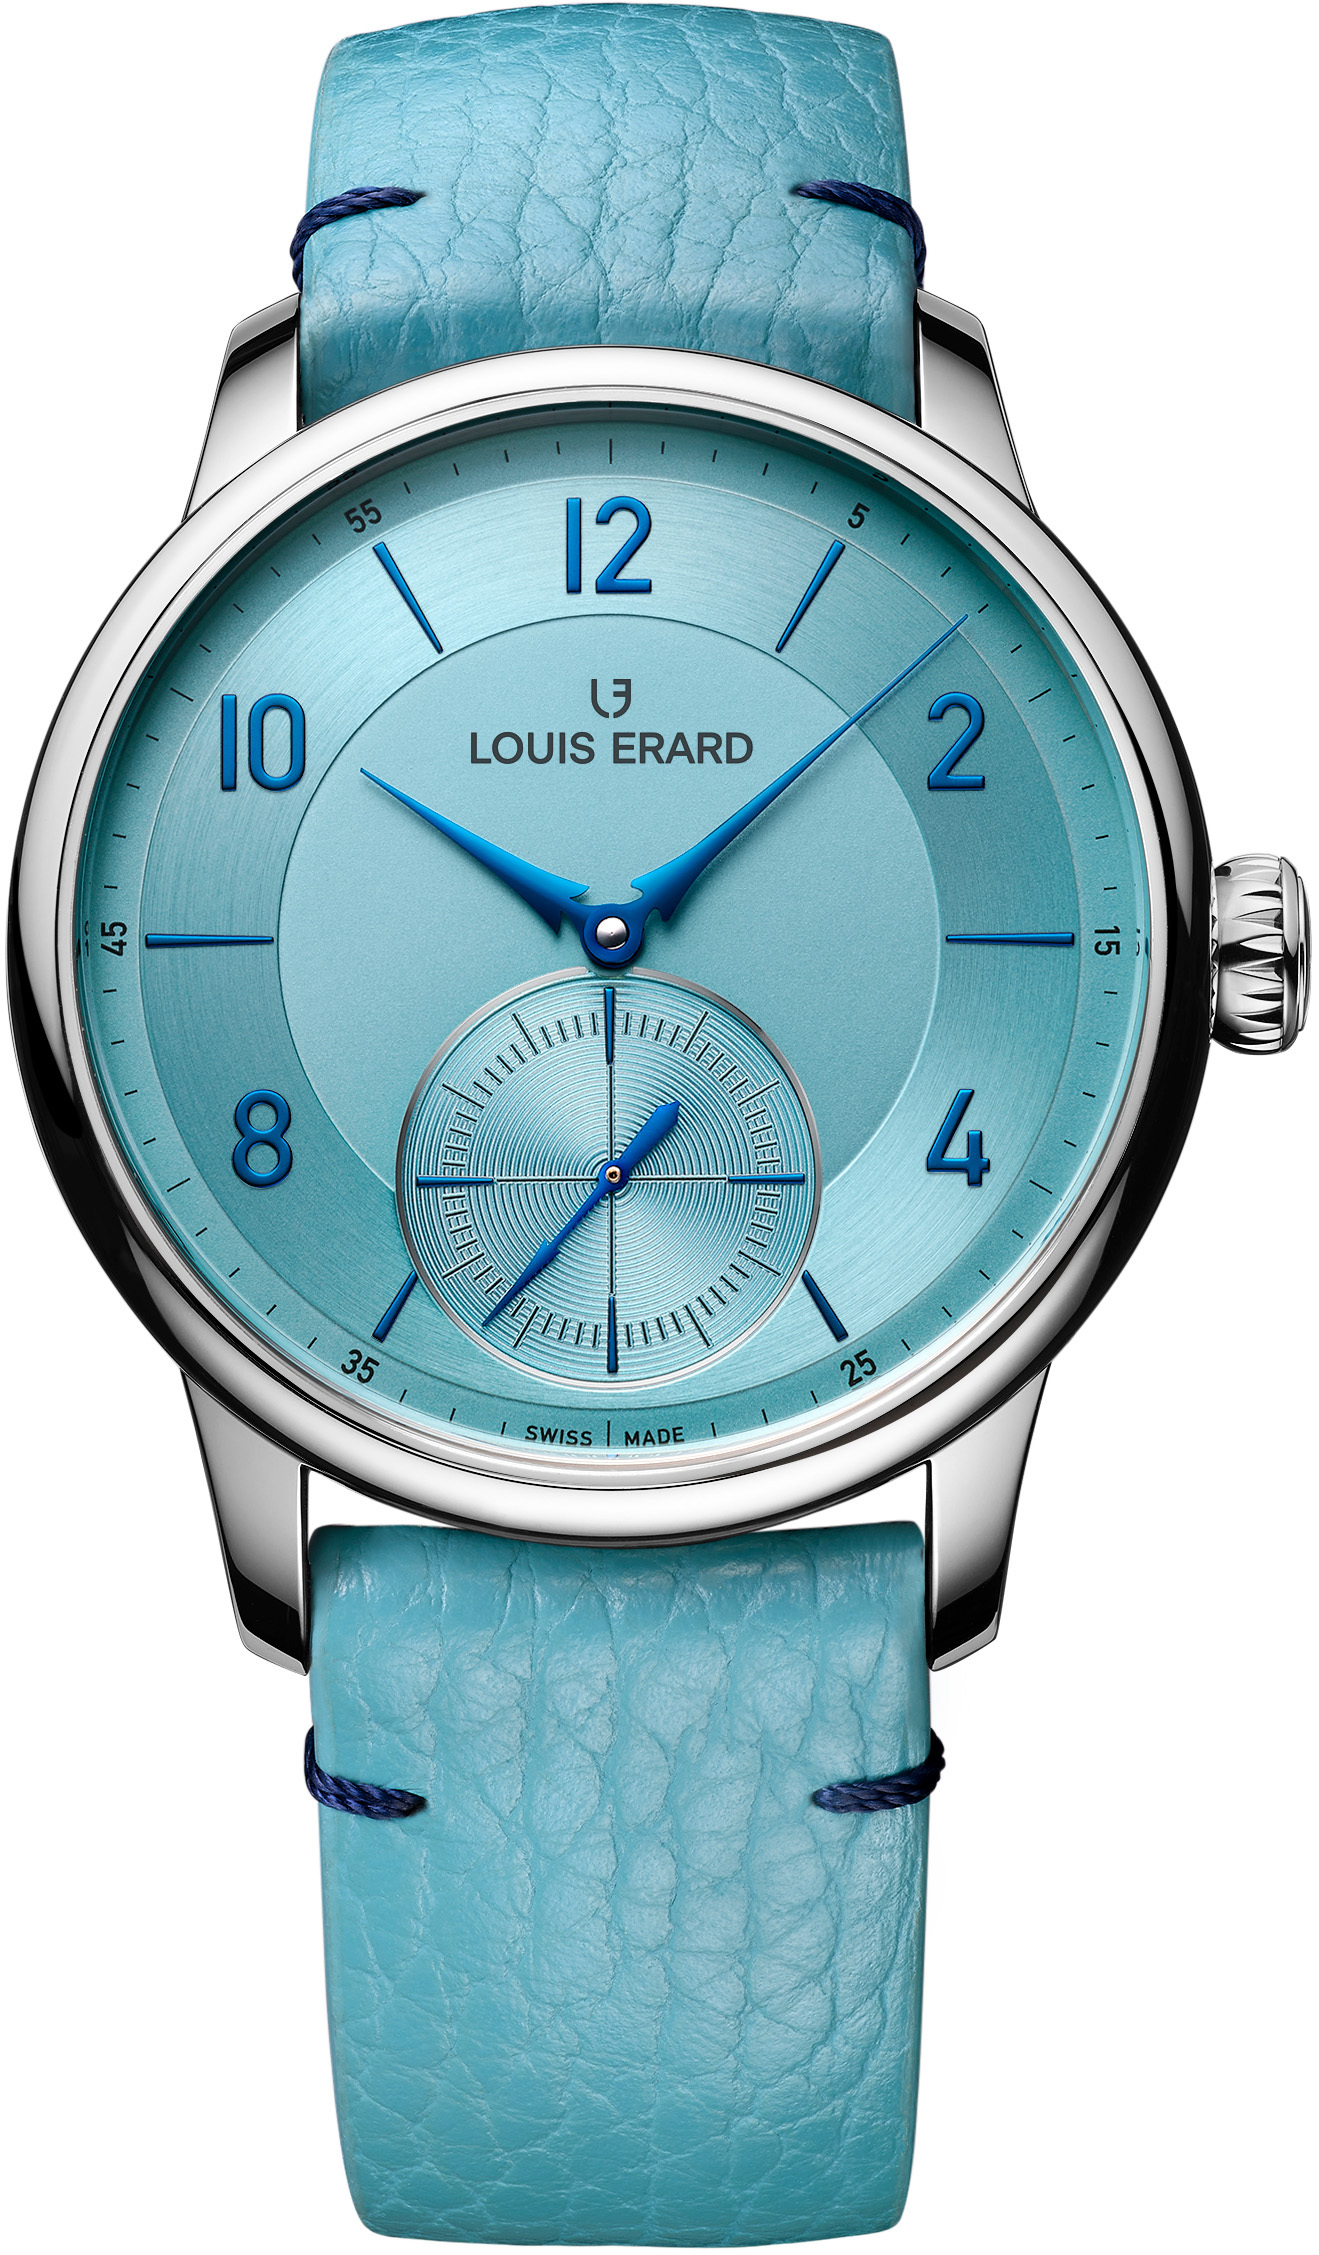 Excellence - Louis Erard